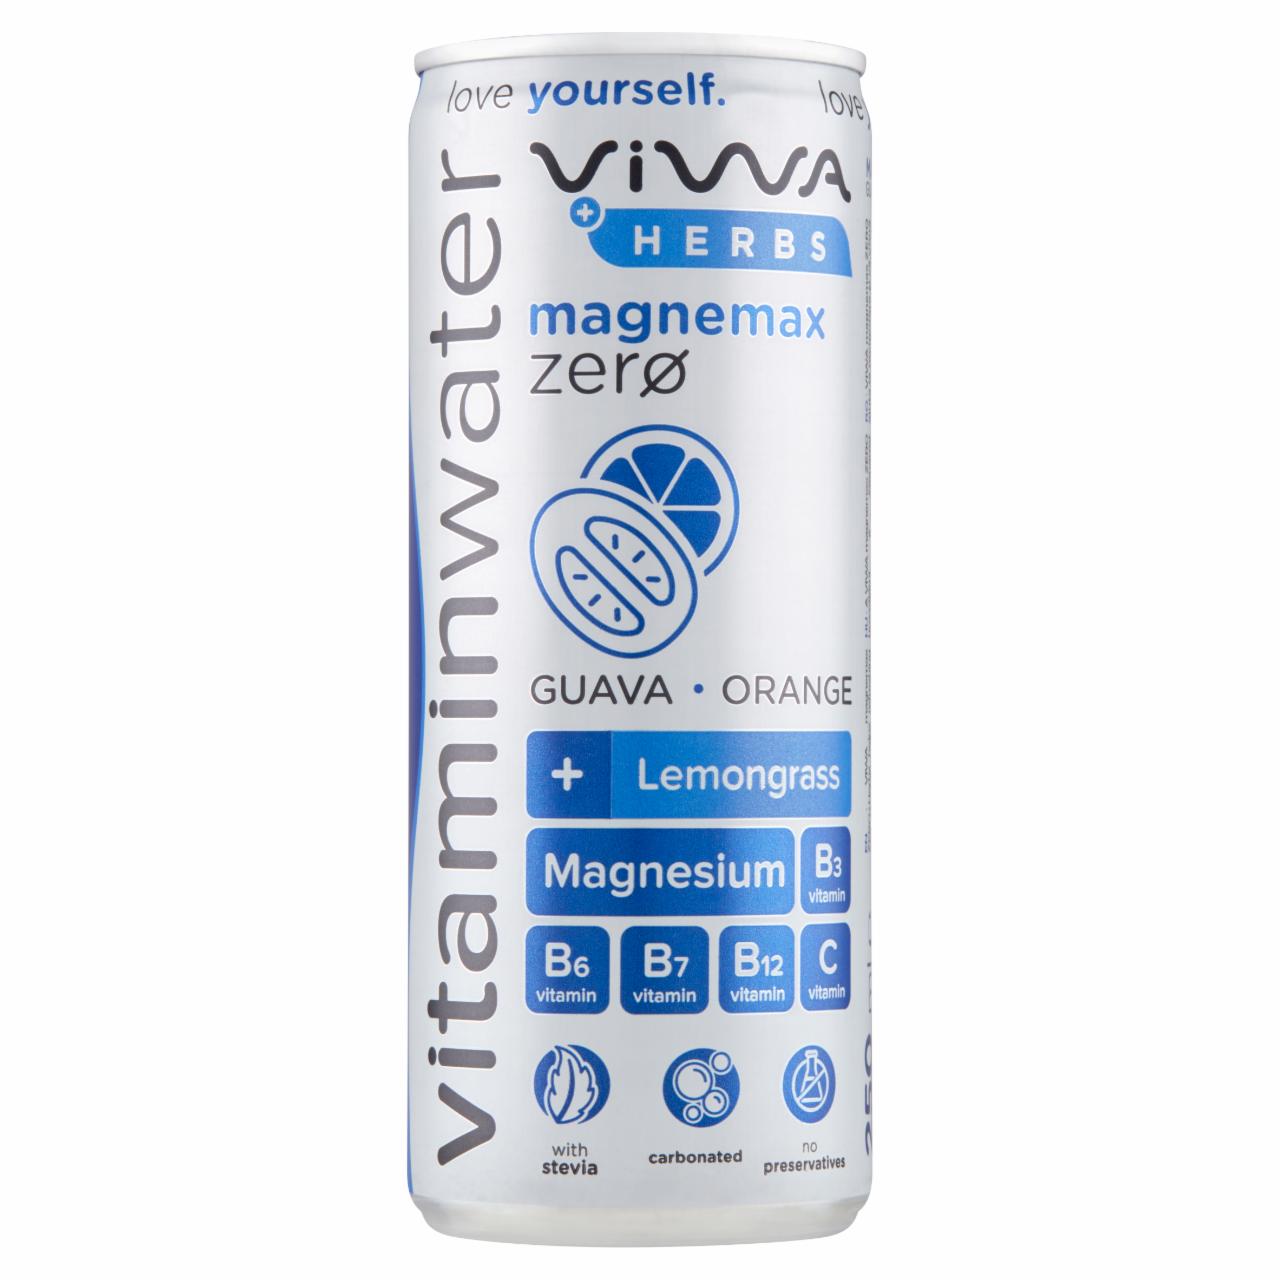 Képek - Viwa Vitaminwater Magnemax Zero + Herbs narancs-guava ízű, energiamentes, szénsavas üdítőital 250 ml